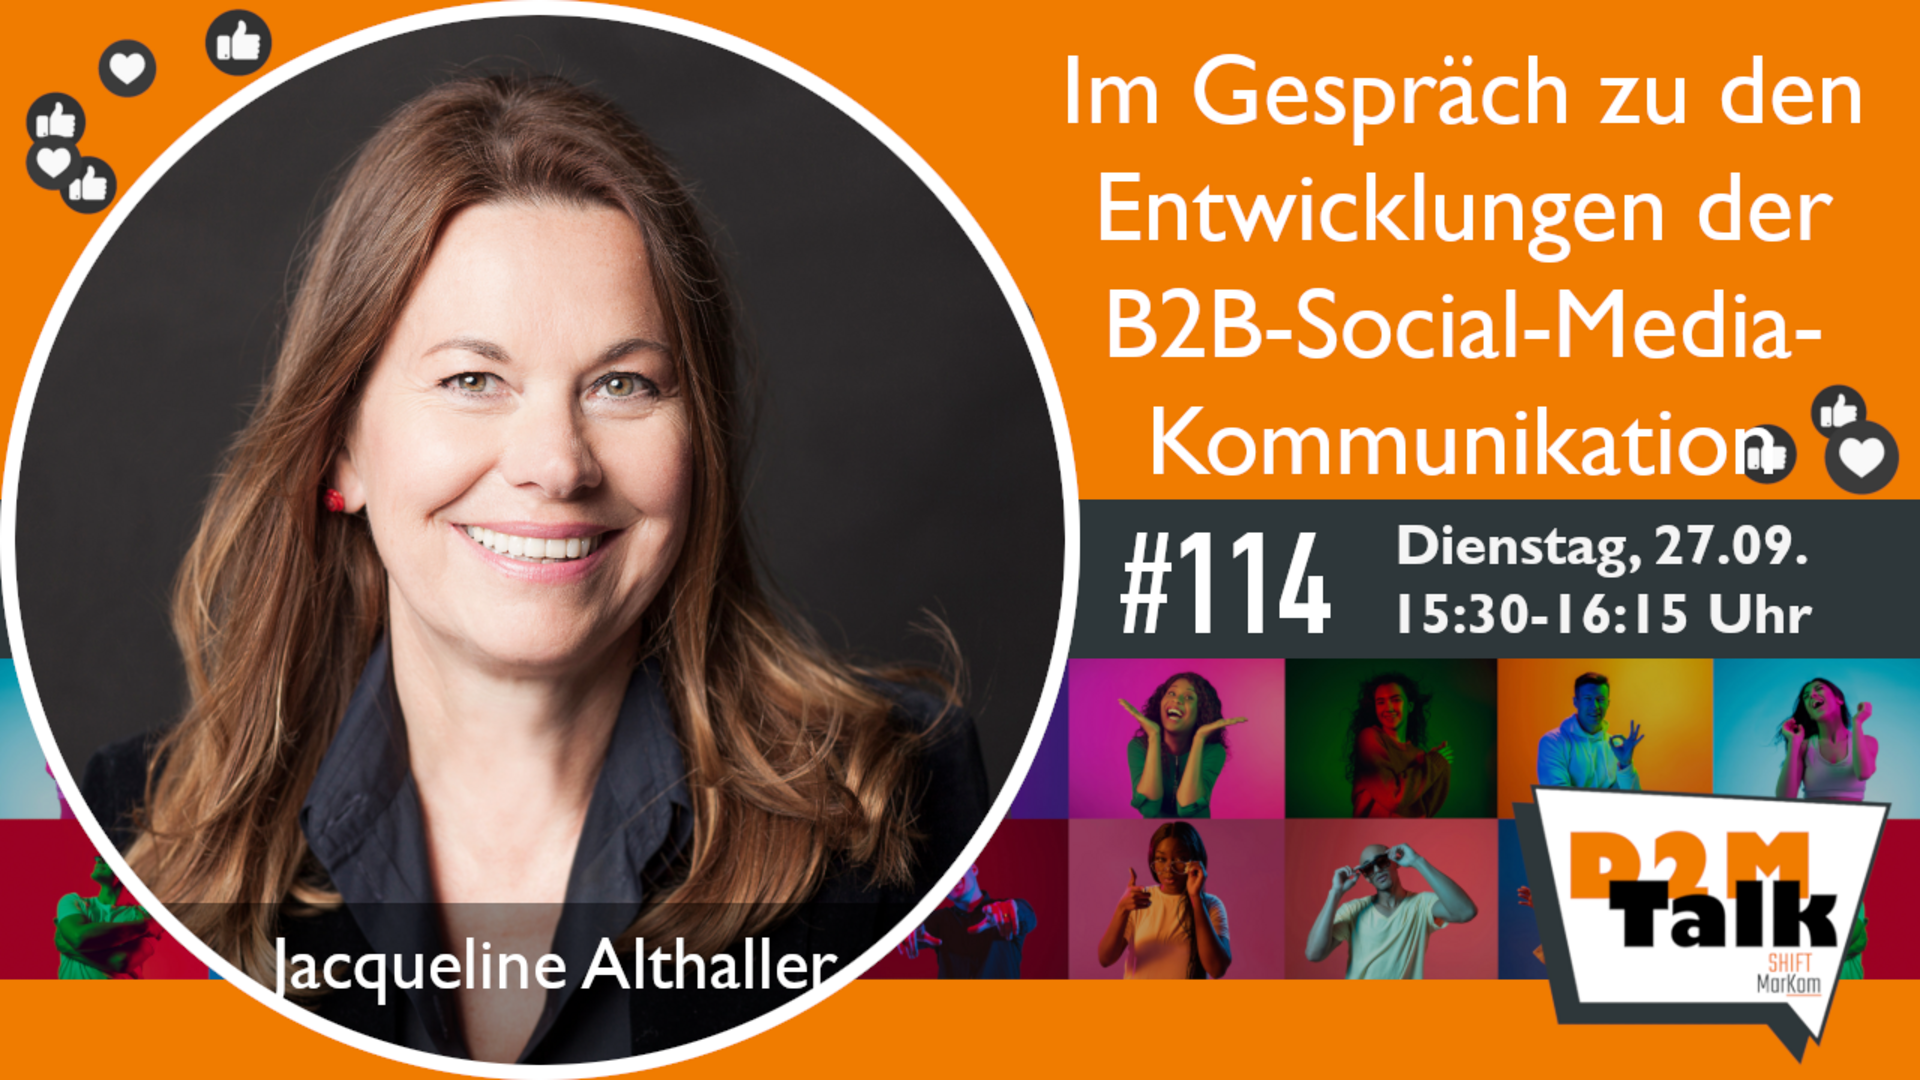 Im Gespräch mit Jacqueline Althaller zu den Entwicklungen der B2B-Social-Media-Kommunikation